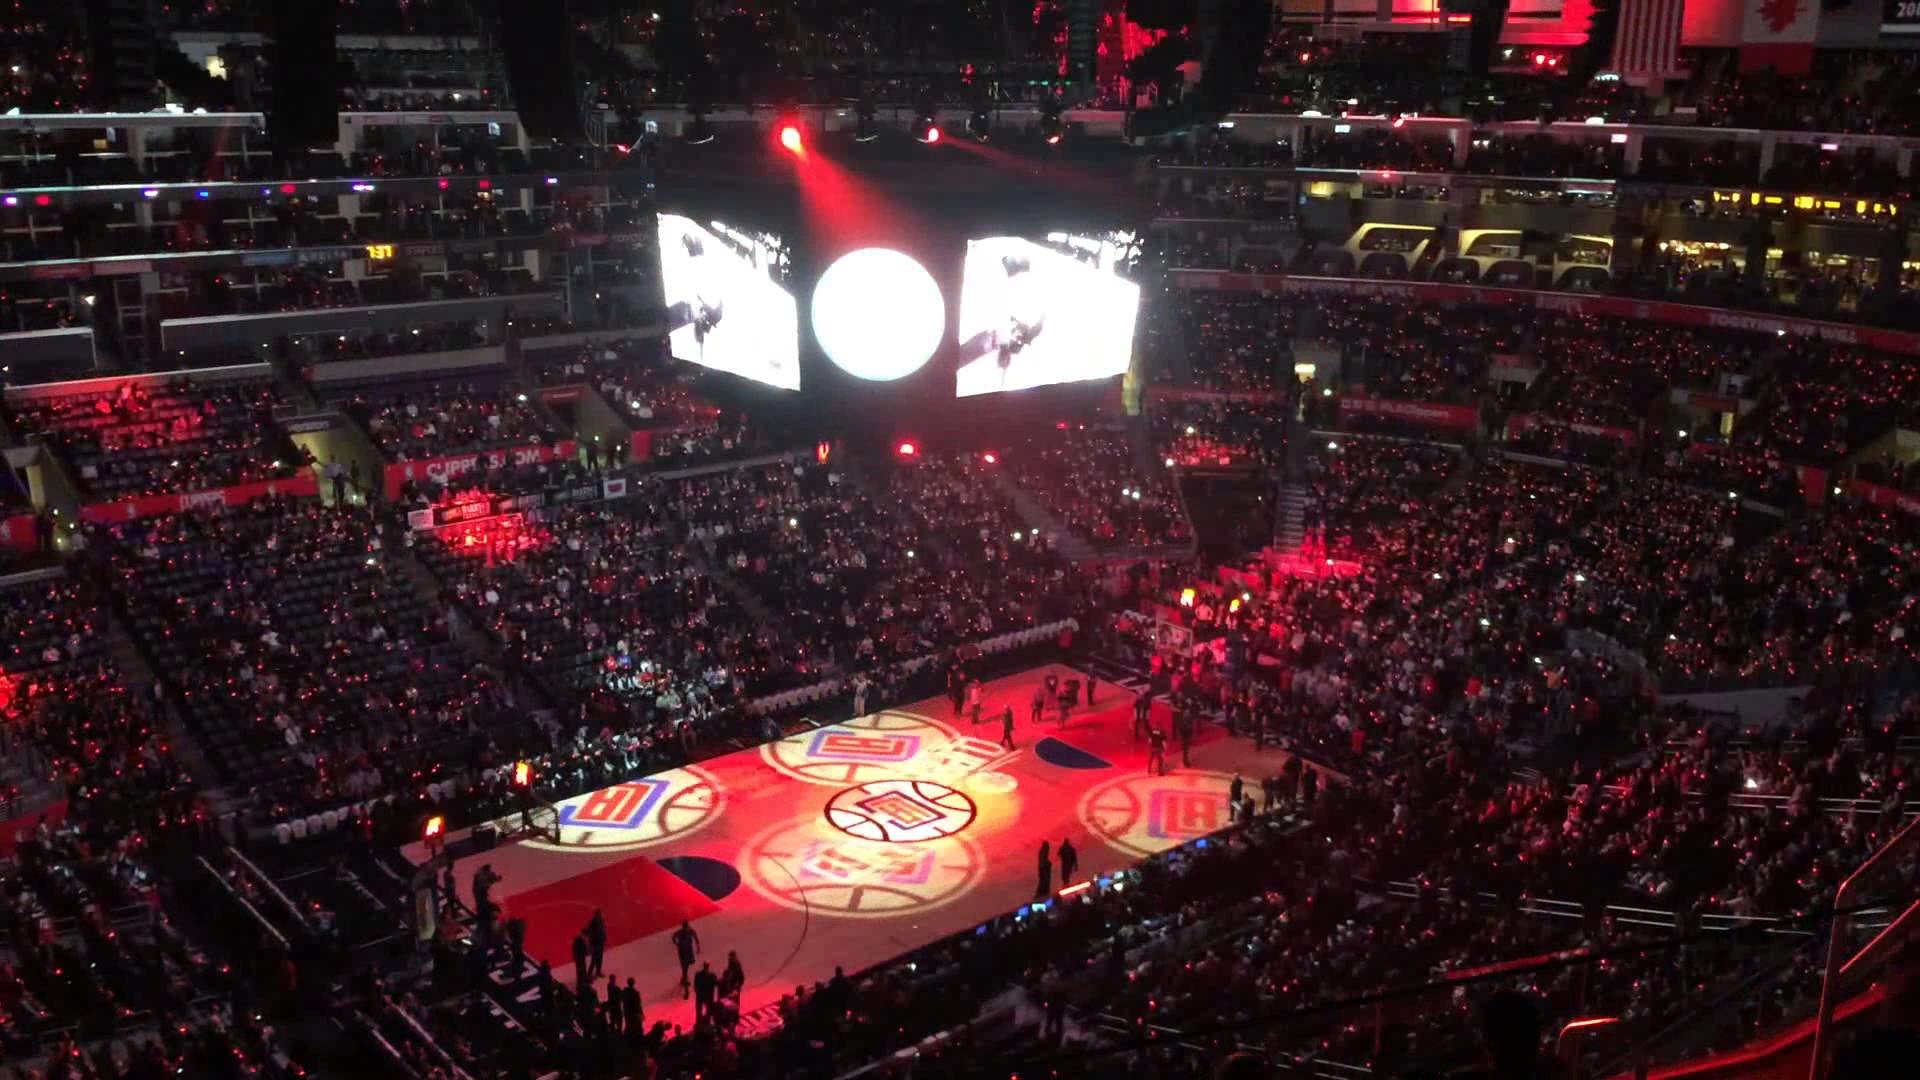 1920x1080 LA Clippers Team Announcement + Light Show @ Staples Center Los Angeles